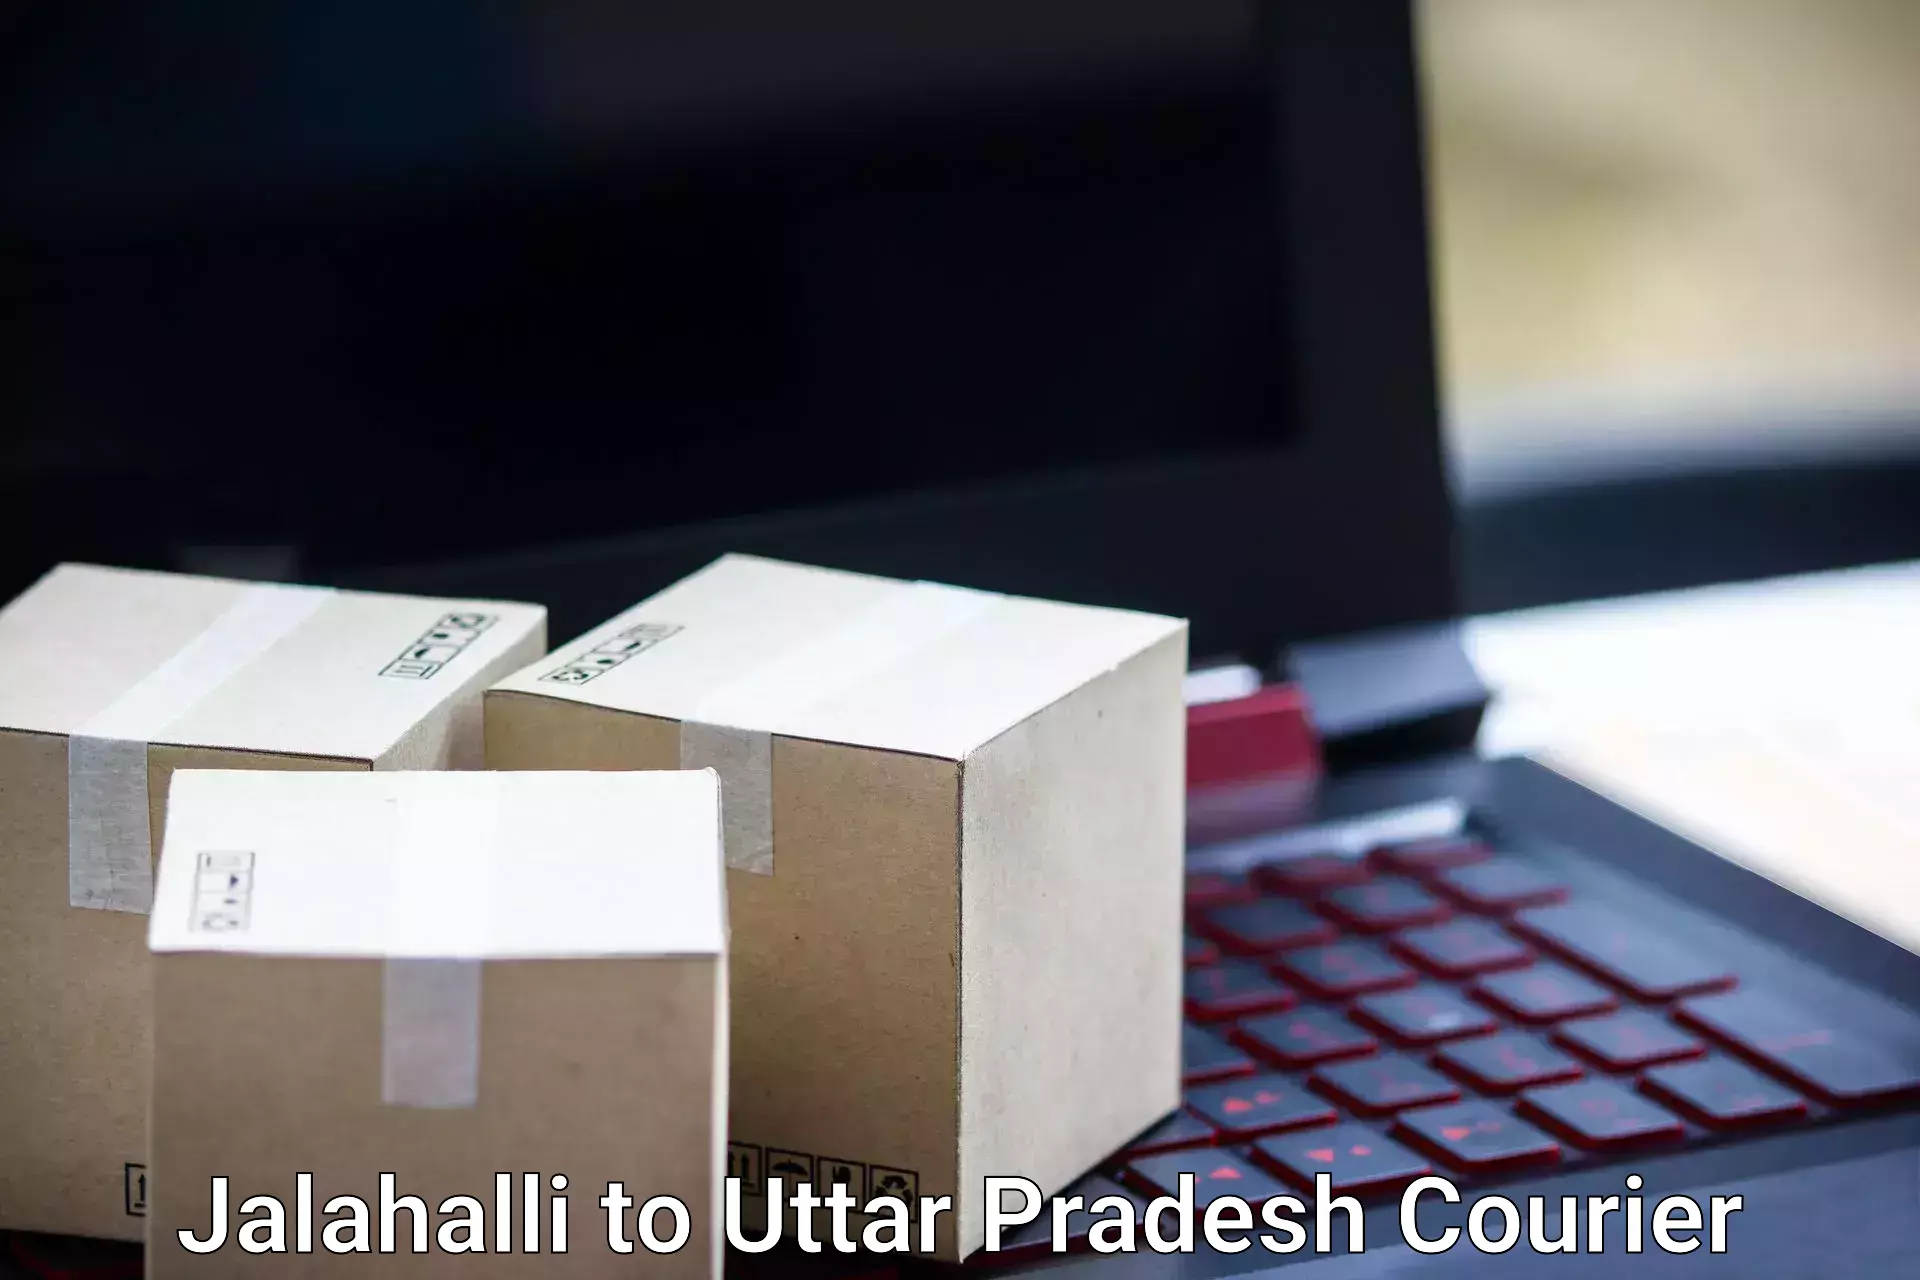 Luggage delivery news Jalahalli to Aligarh Muslim University